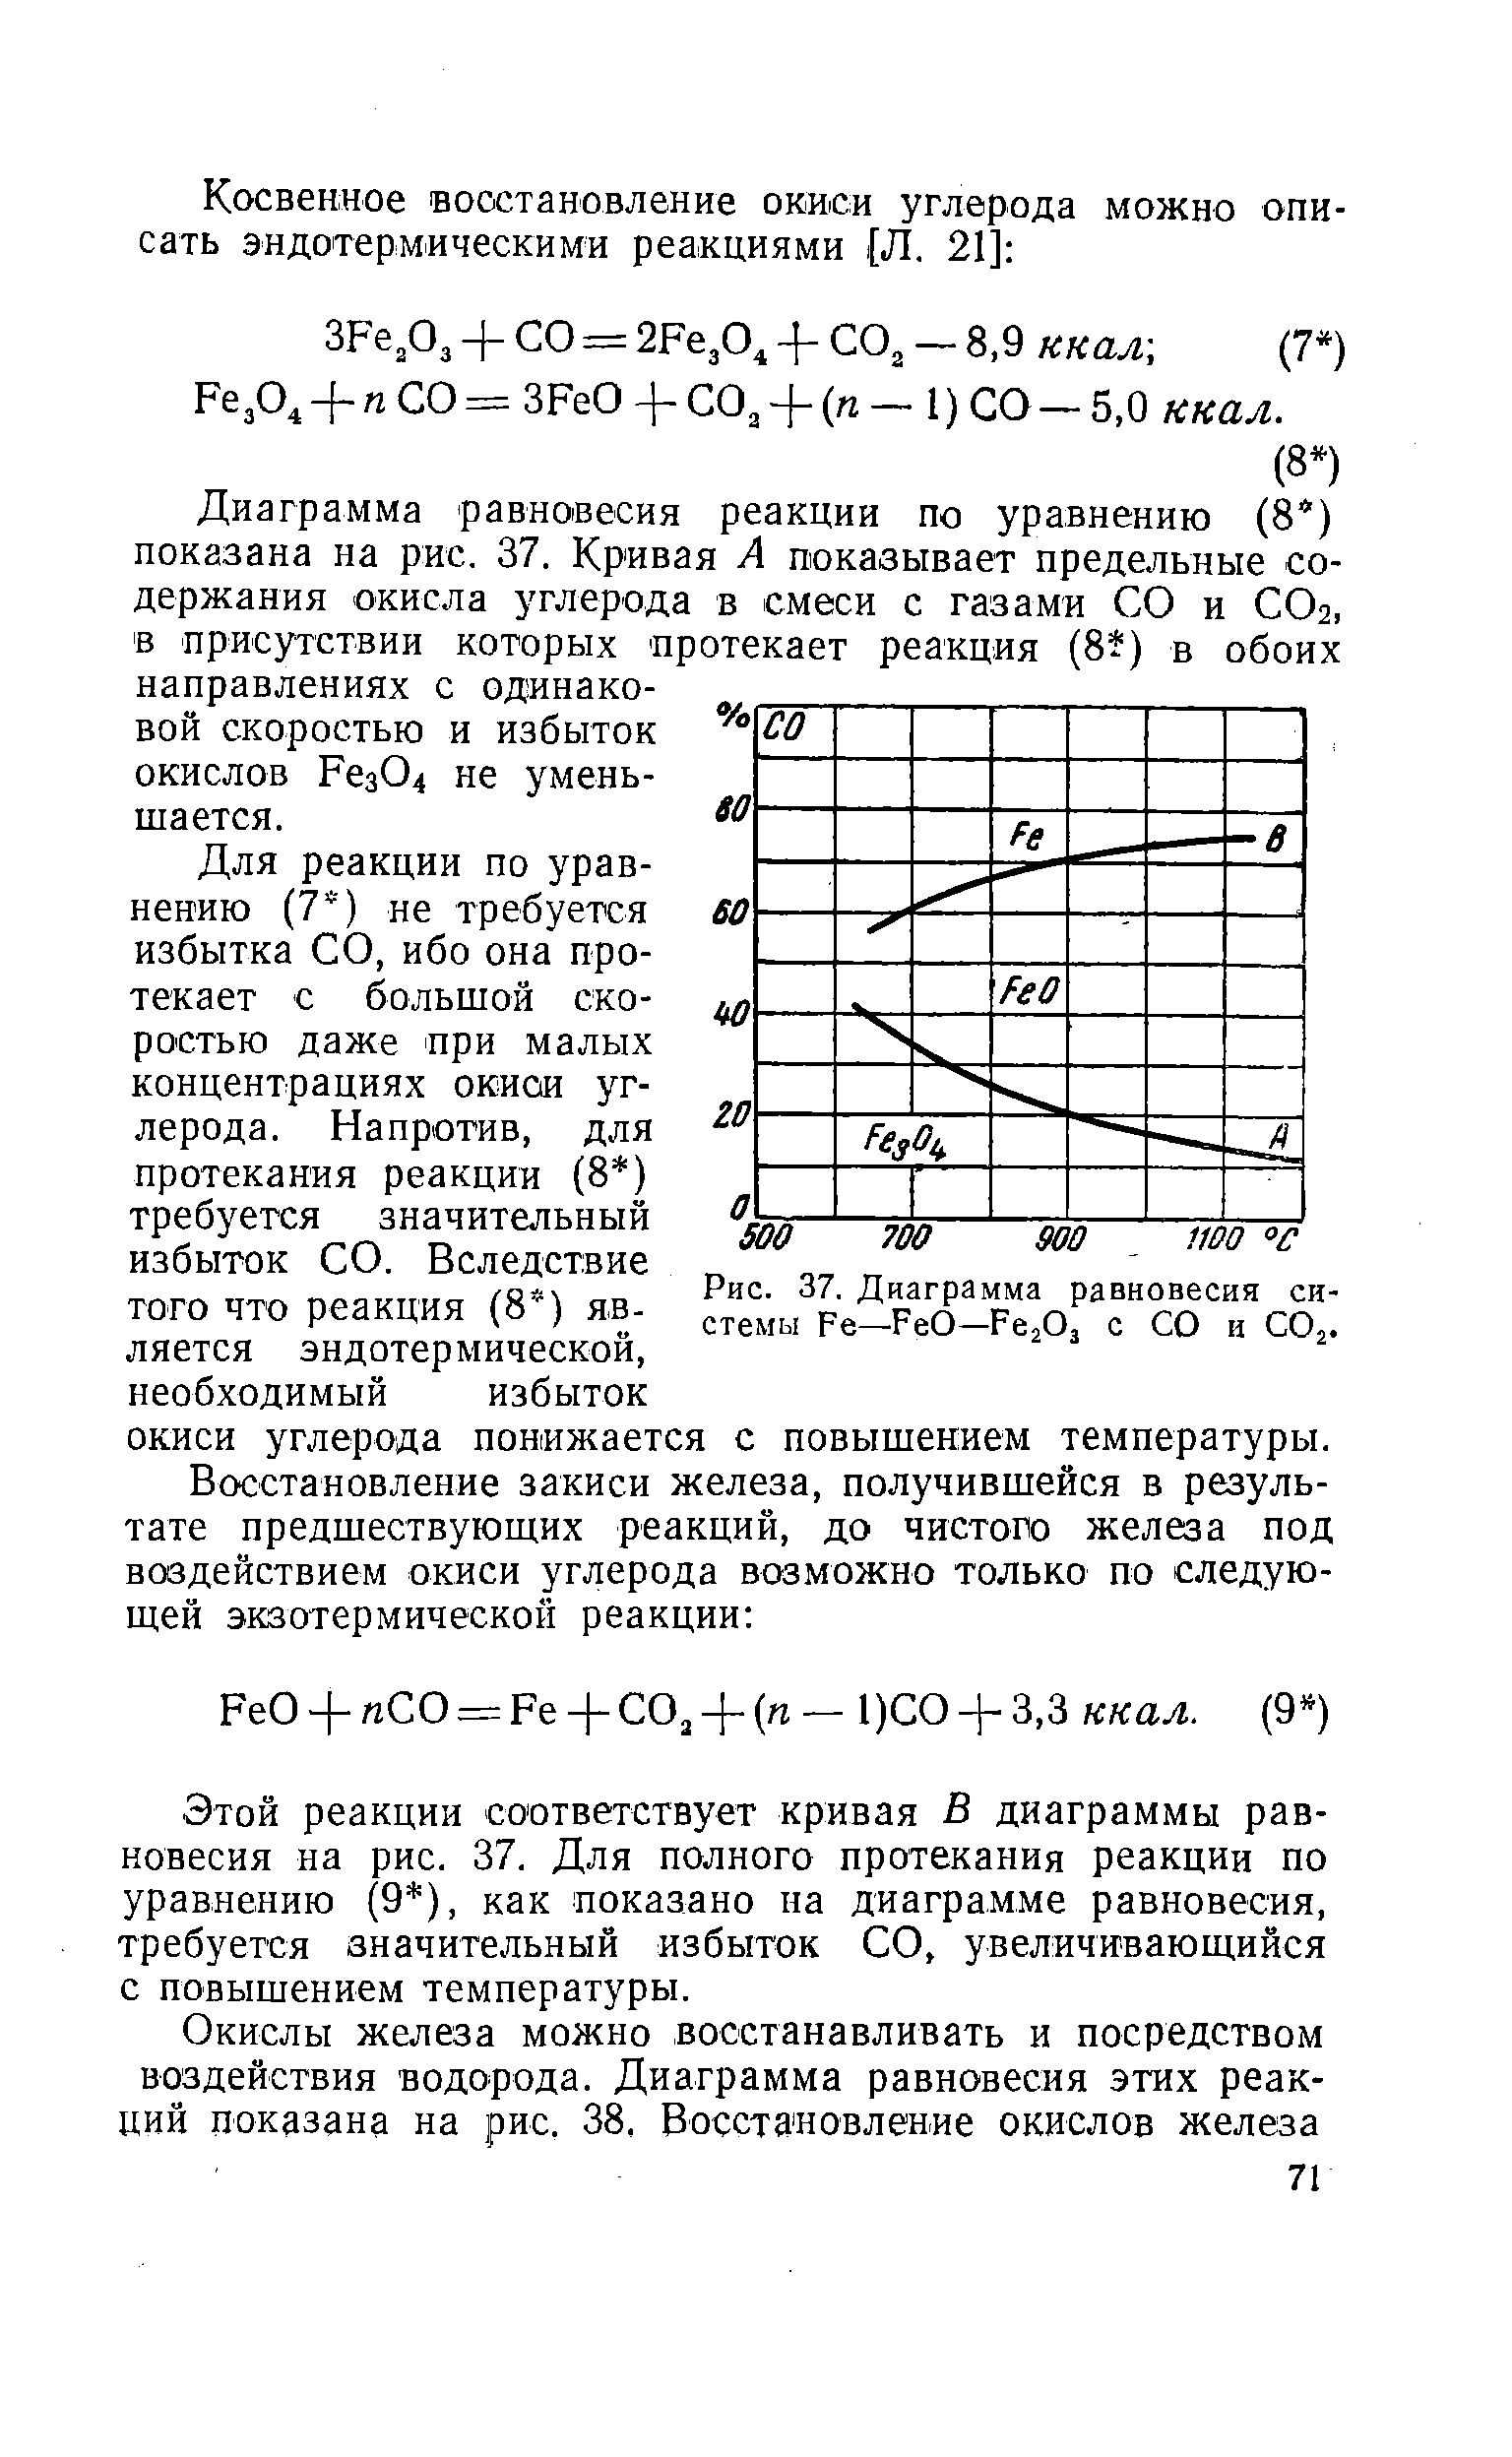 Рис. 37. Диаграмма равновесия системы Fe—FeO—Fe,0, с СО и СО,.
